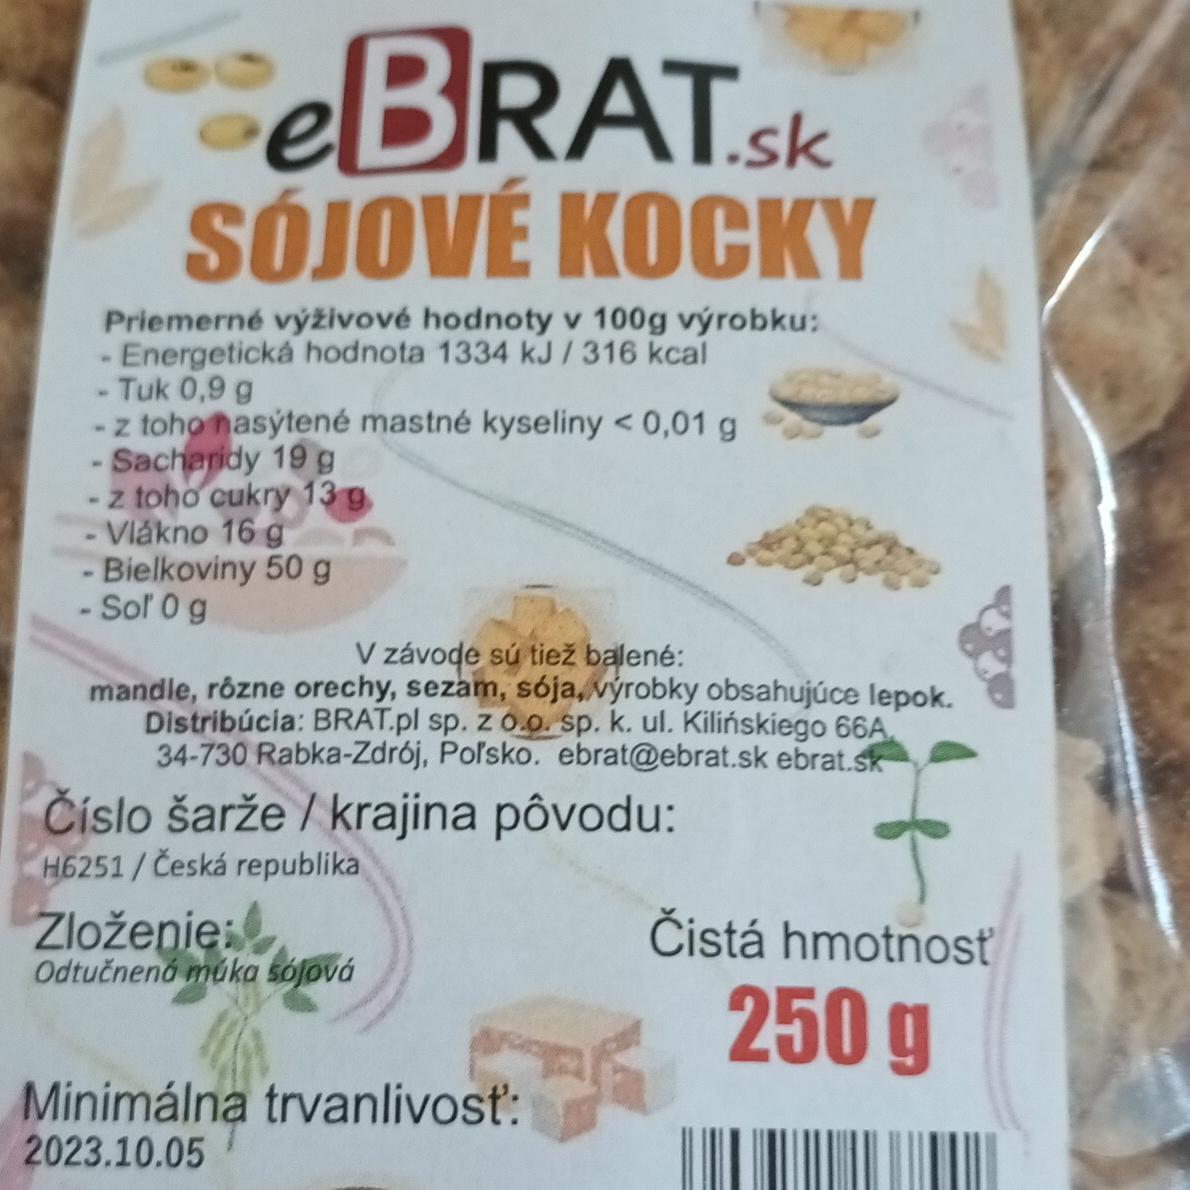 Fotografie - Sójové kocky eBrat.sk